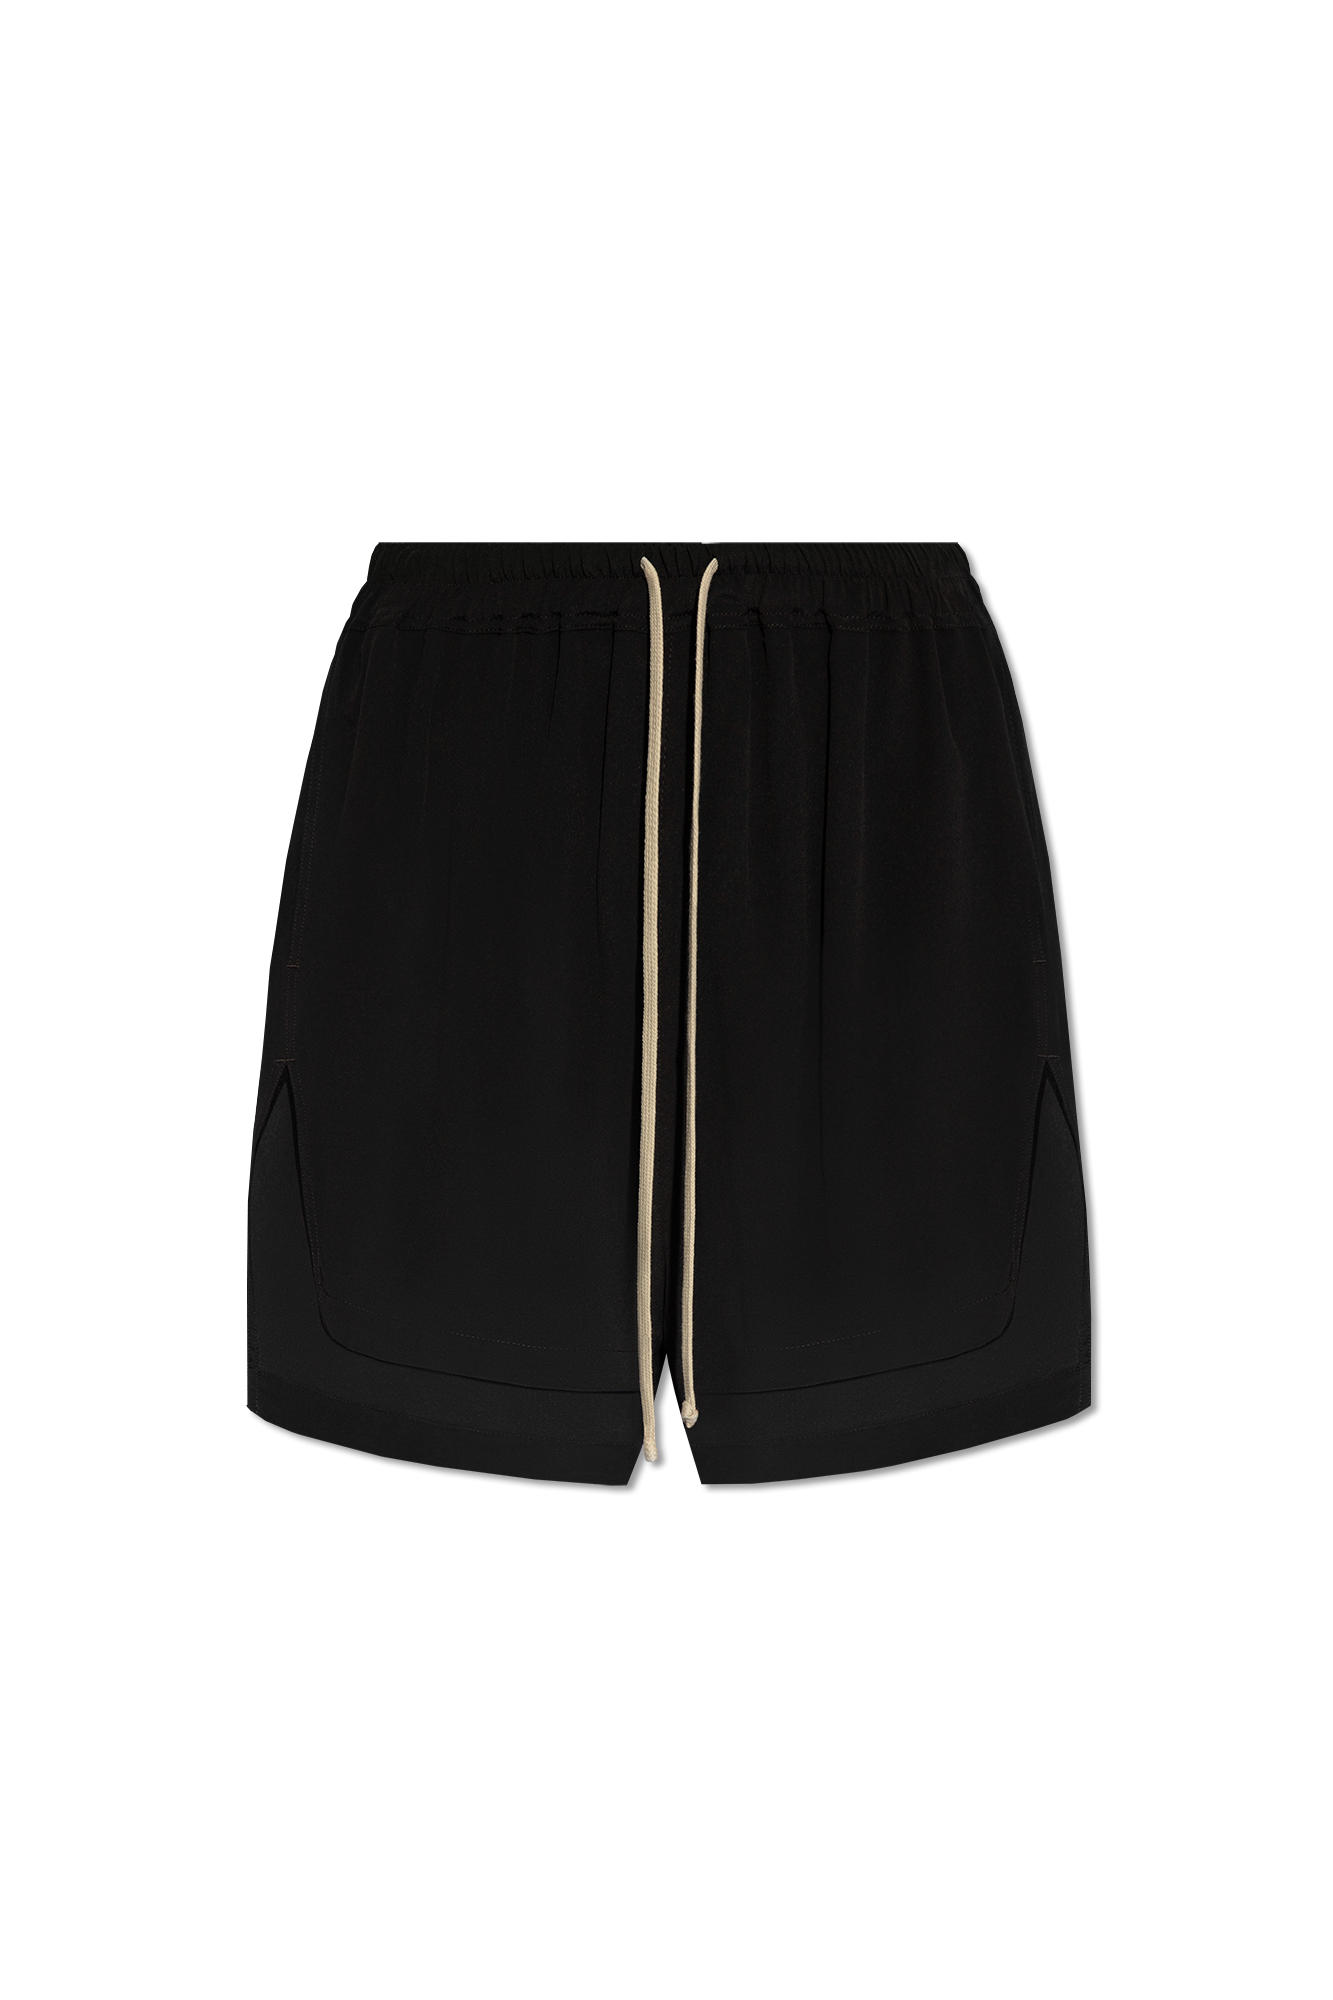 Rick Owens ‘Boxers’ shorts